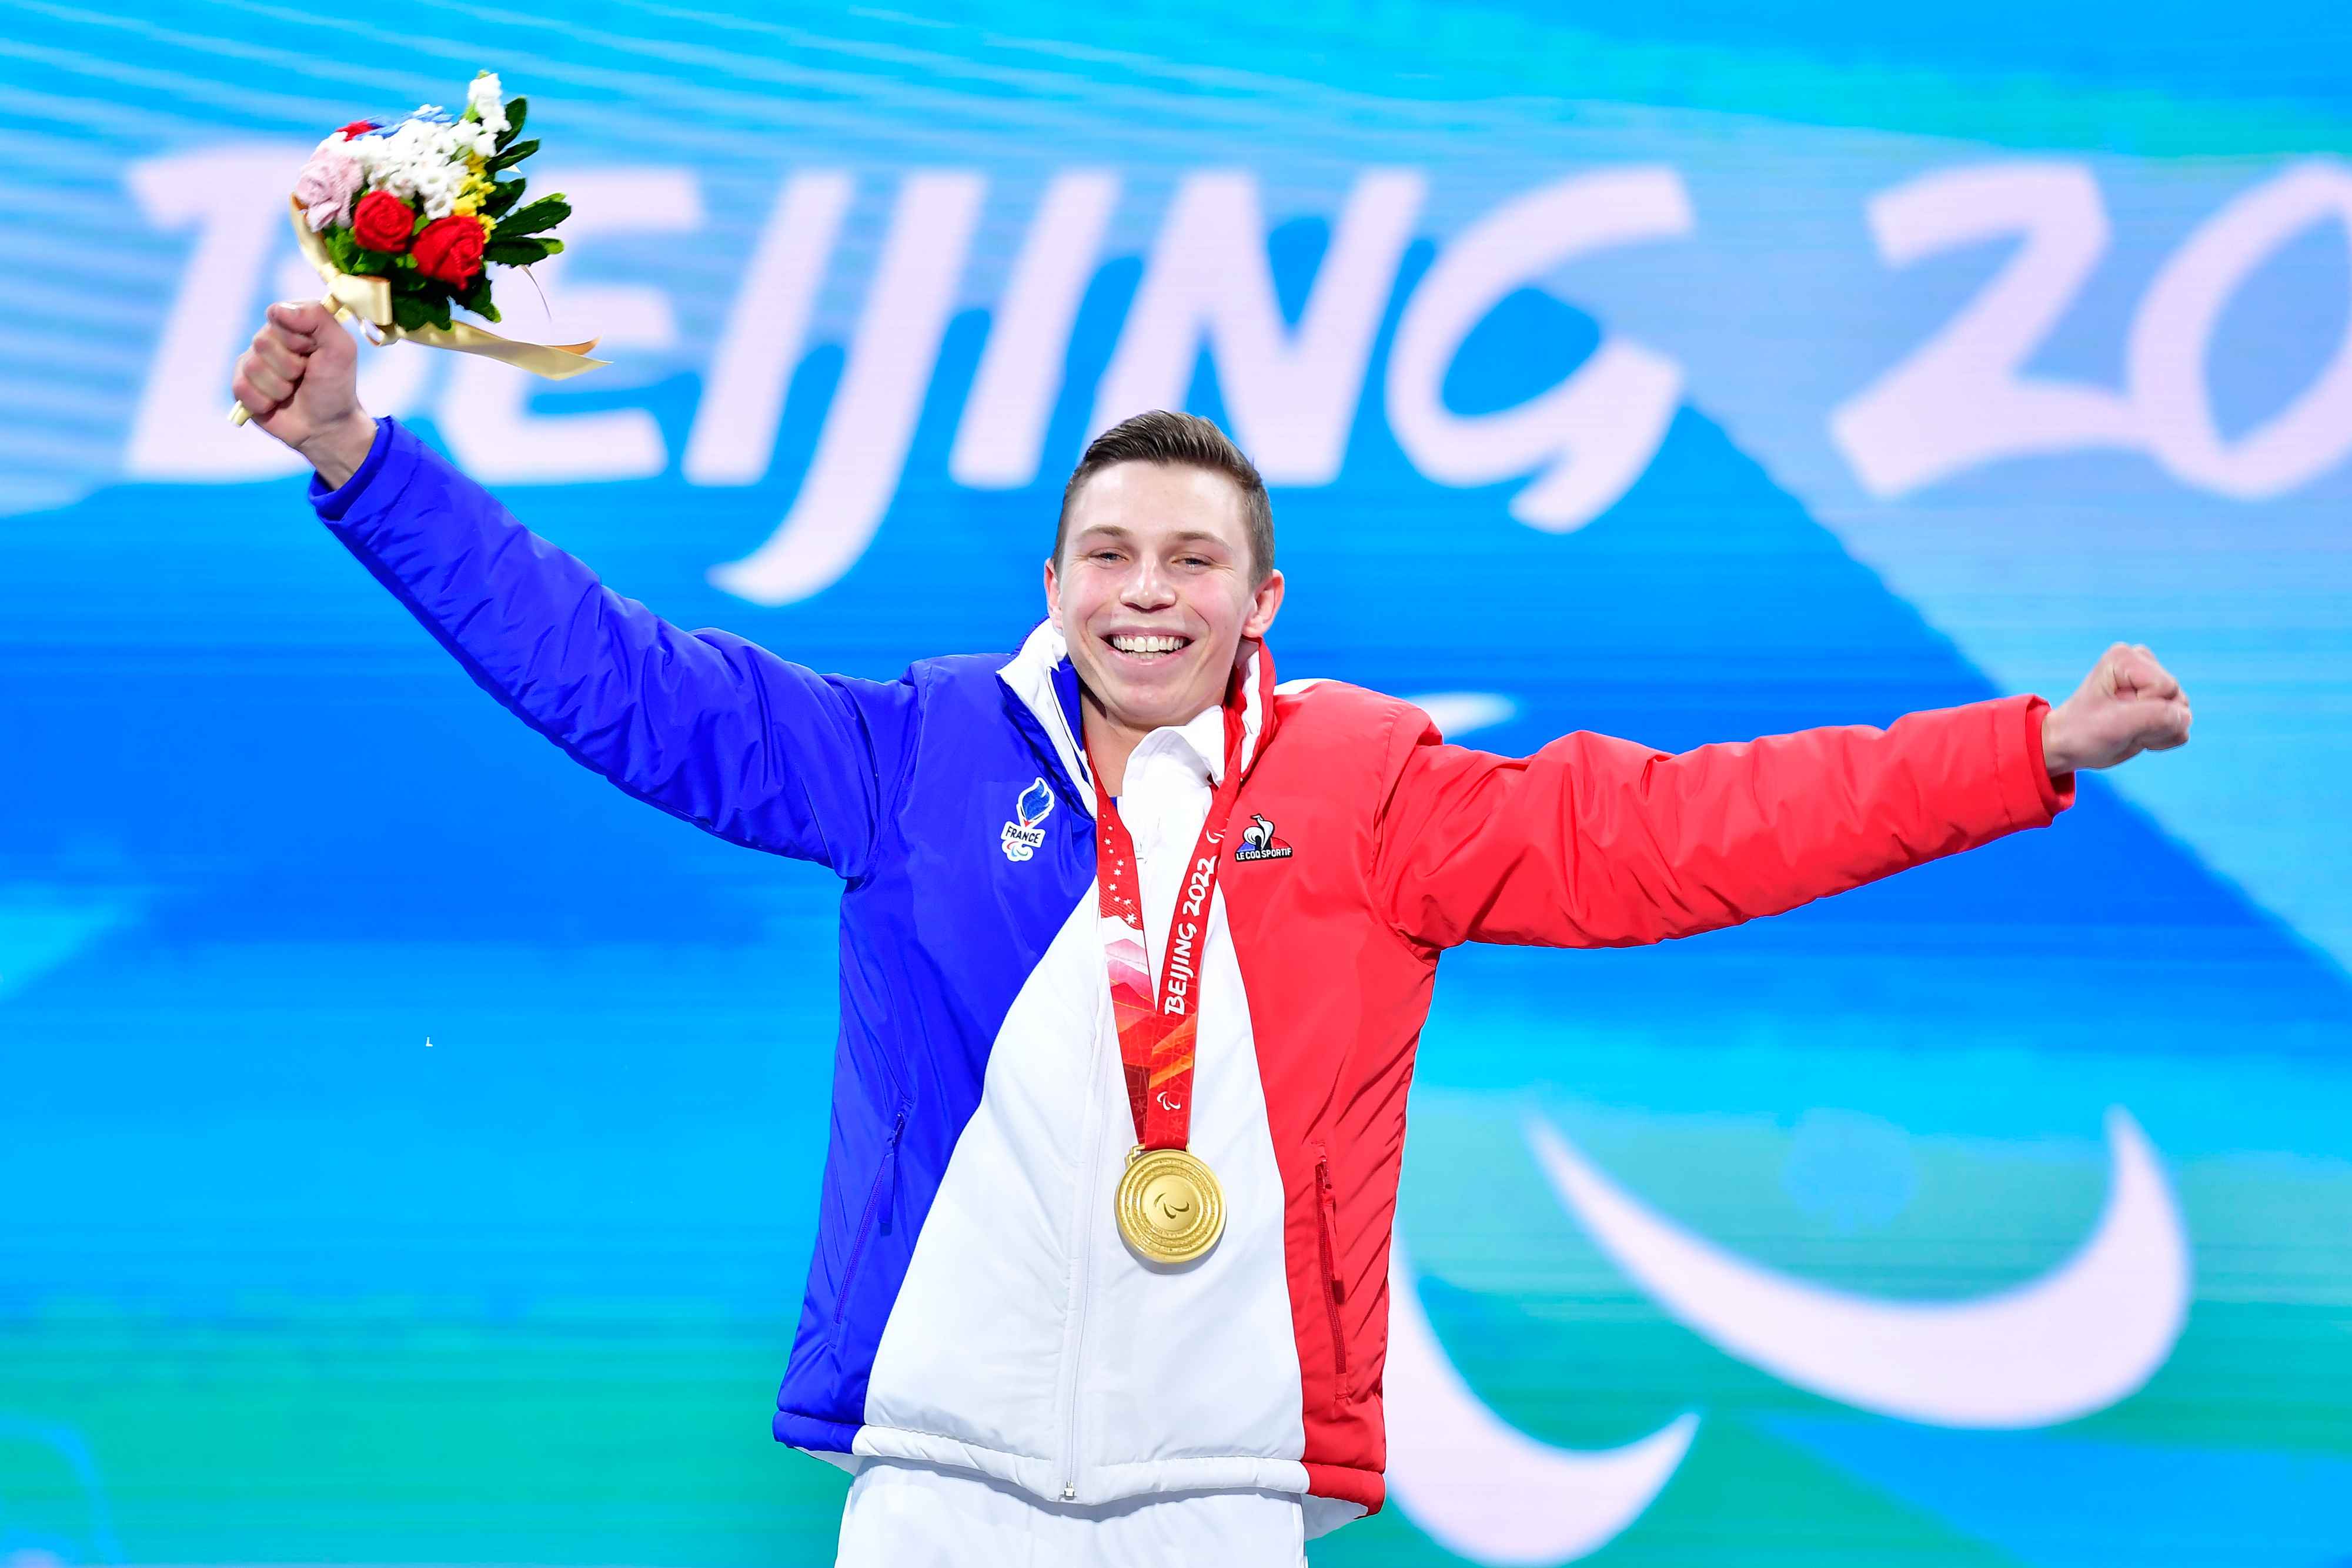 Arthur Bauchet Pékin 2022 Para Ski Alpin Jeux Paralympiques champion paralympique médaille d'or